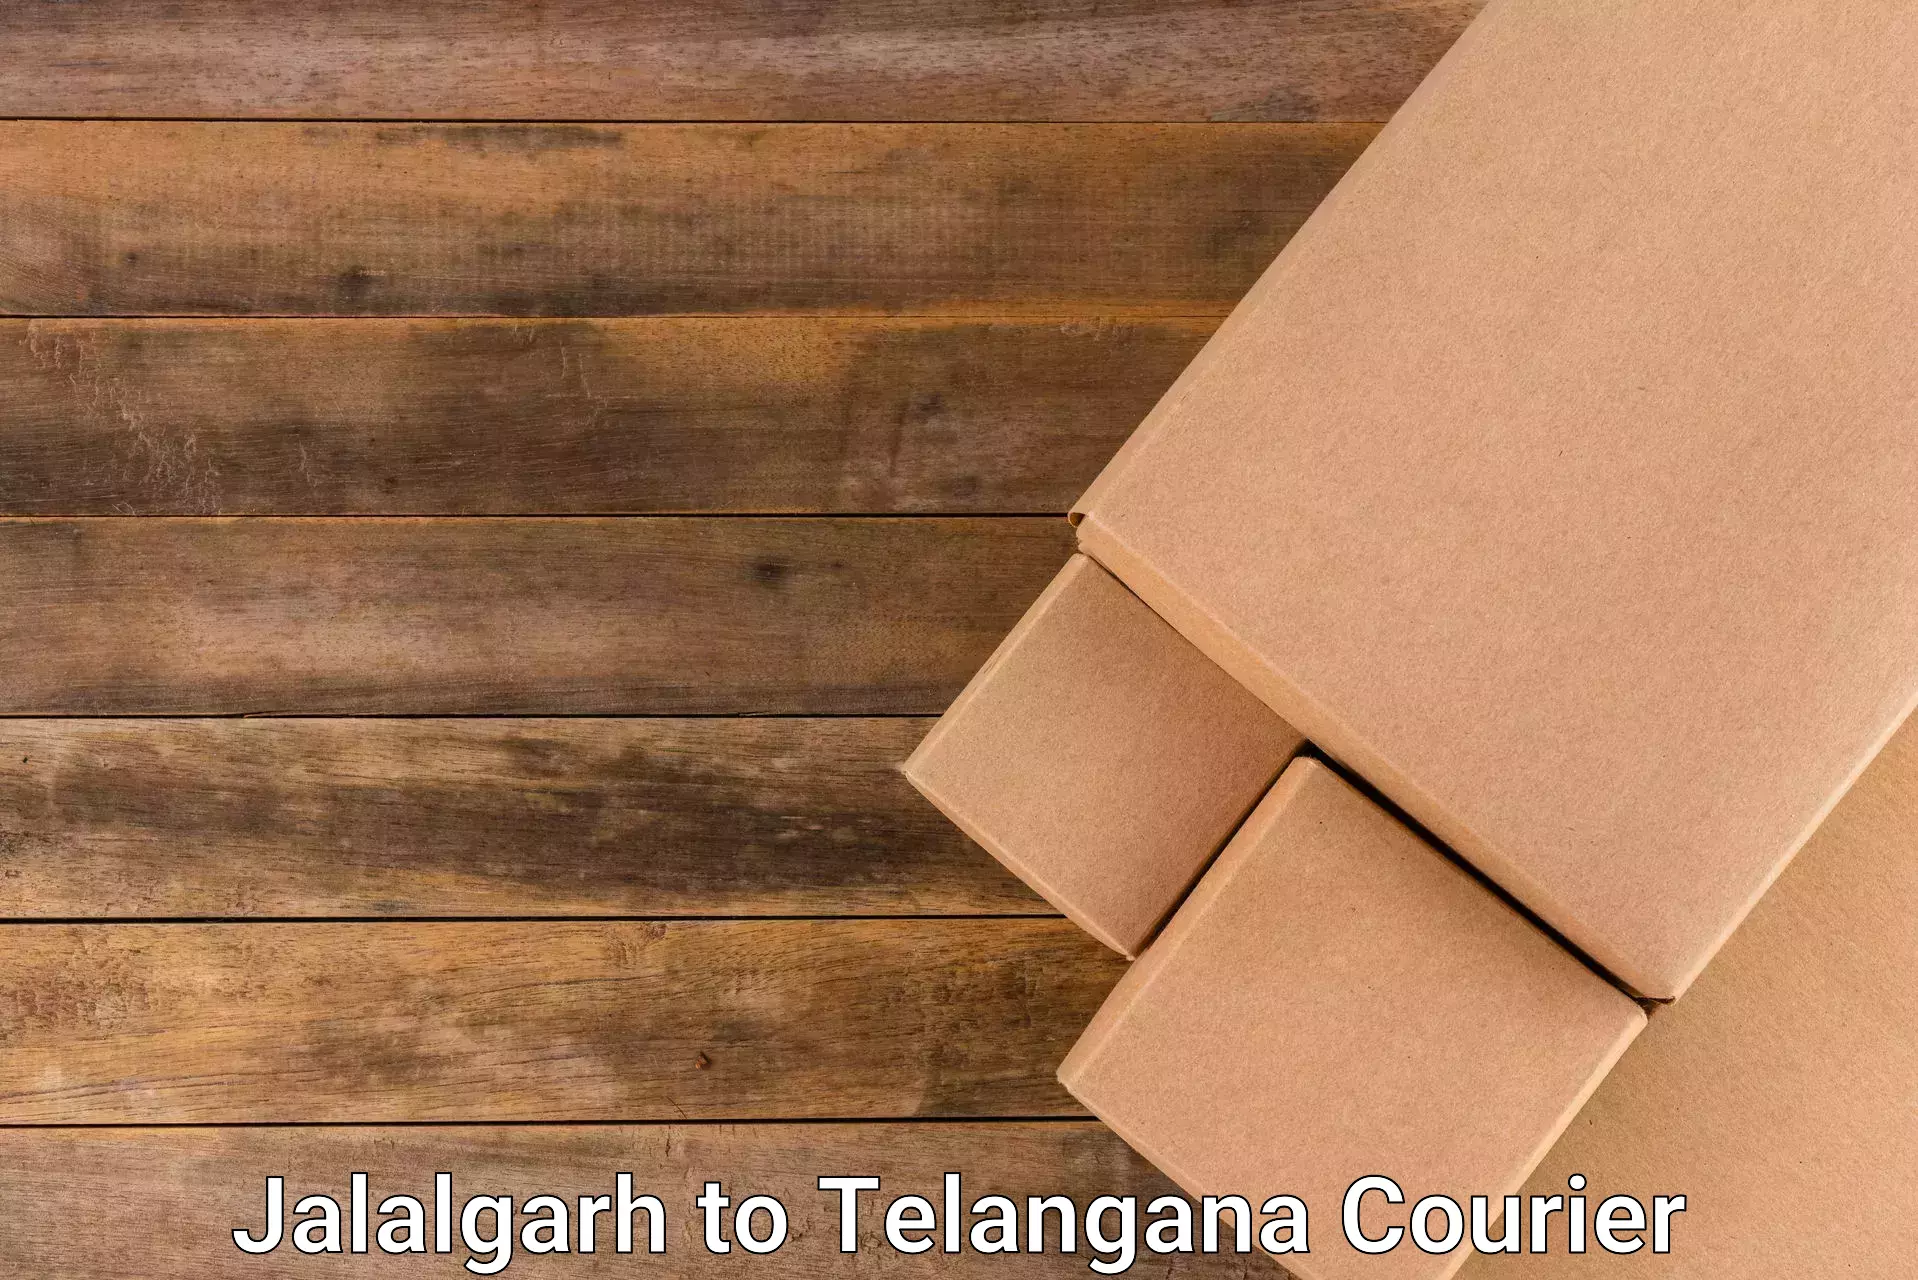 High value parcel delivery Jalalgarh to Shamshabad